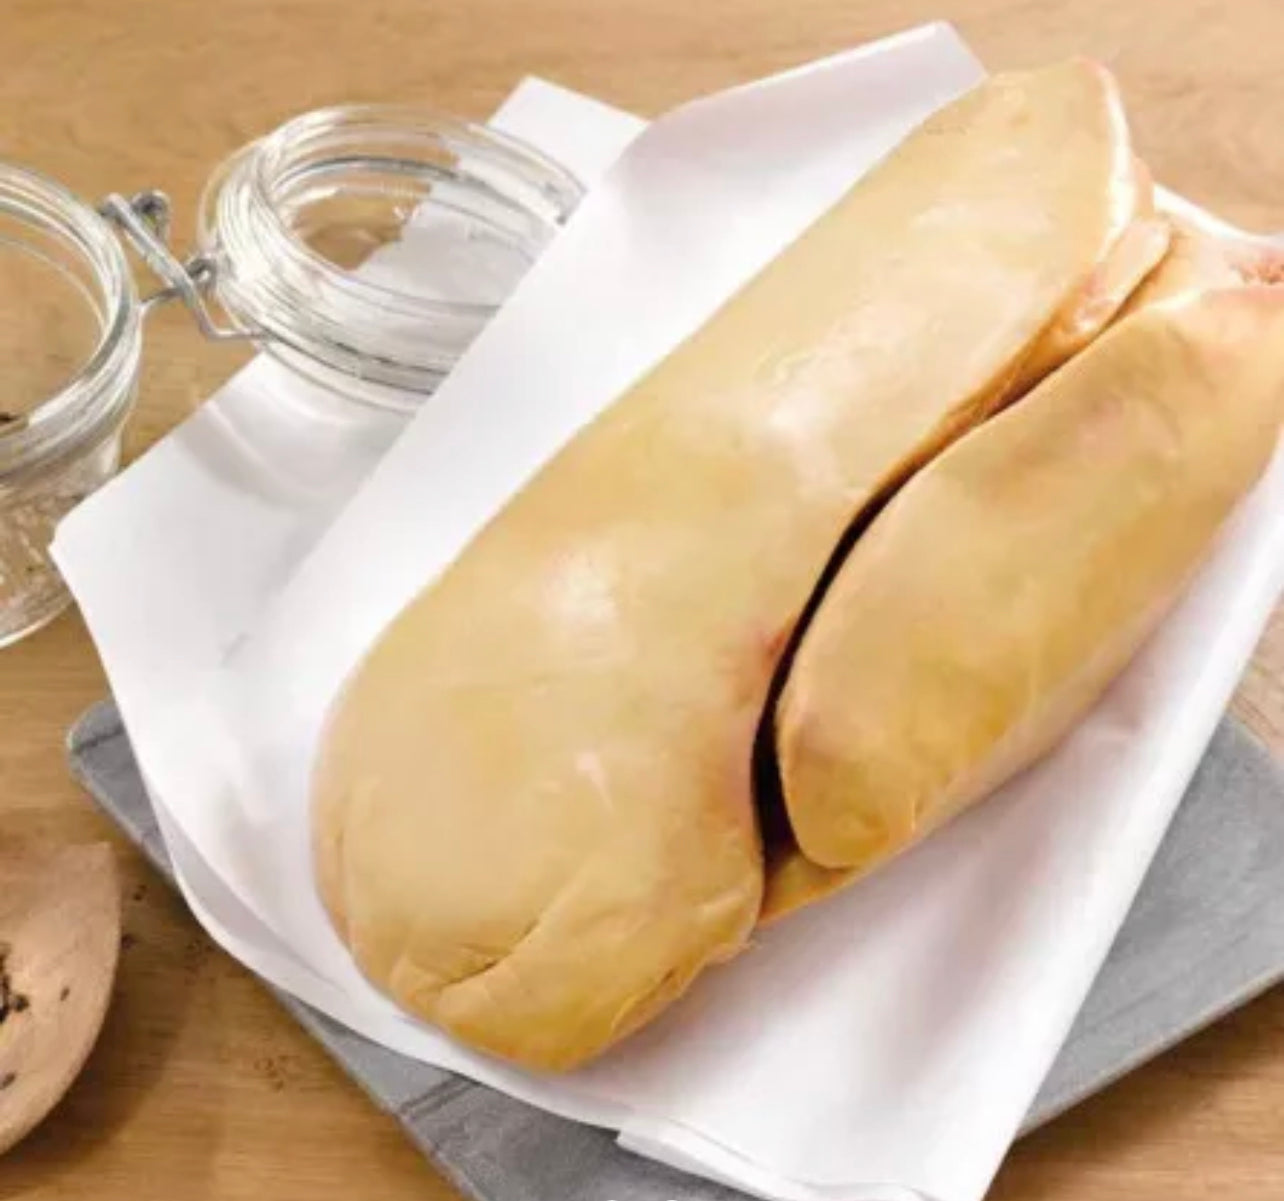 Foie gras de canard cru déveiné (troussé papier) ±350g